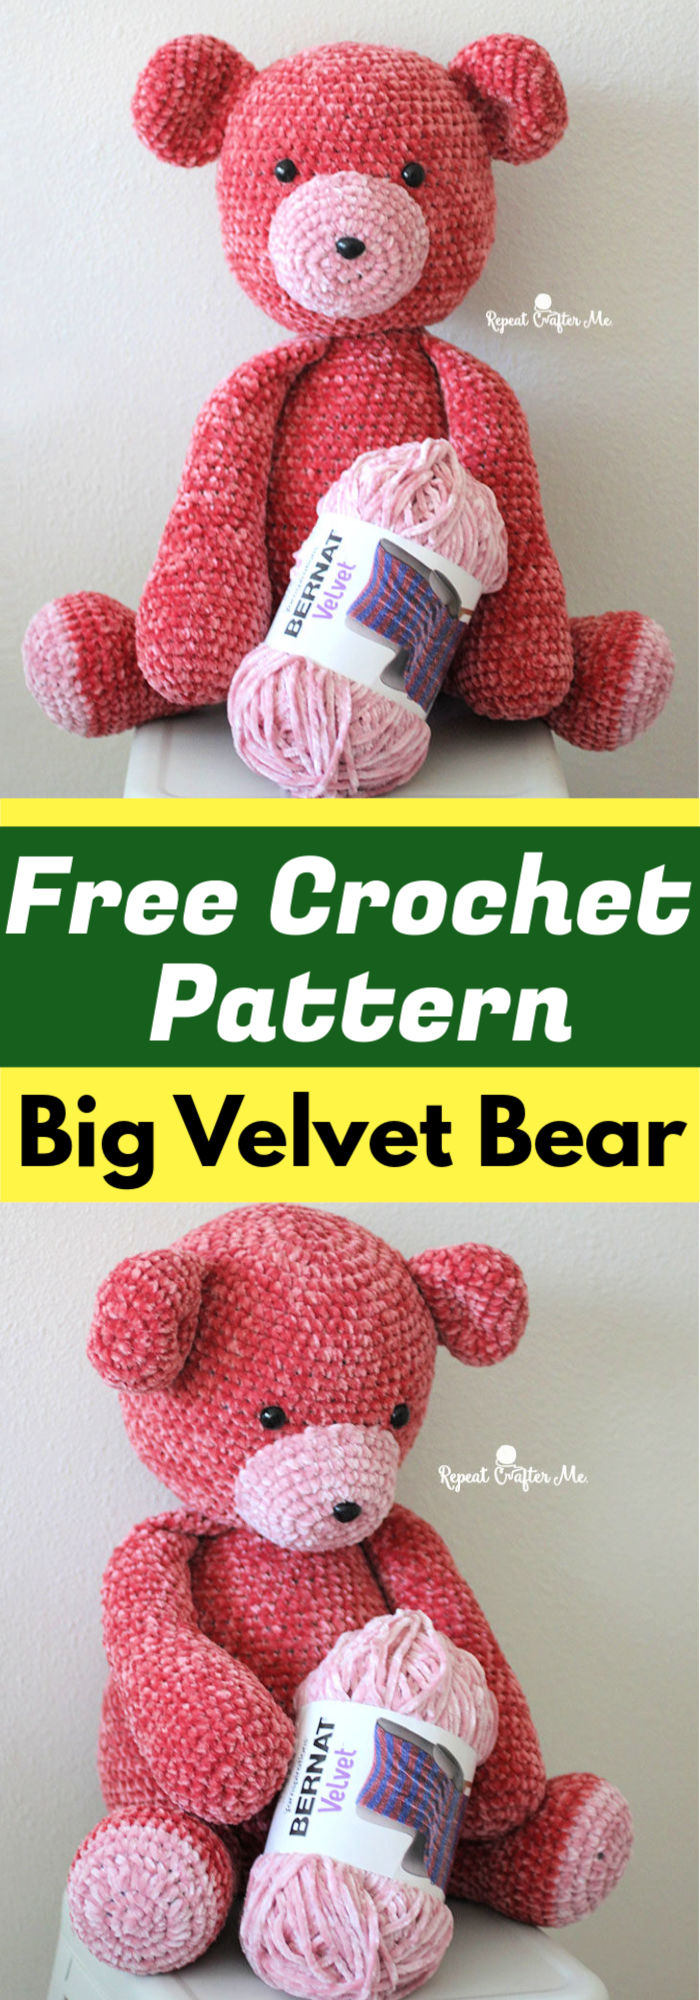 Free Crochet Big Velvet Bear Pattern